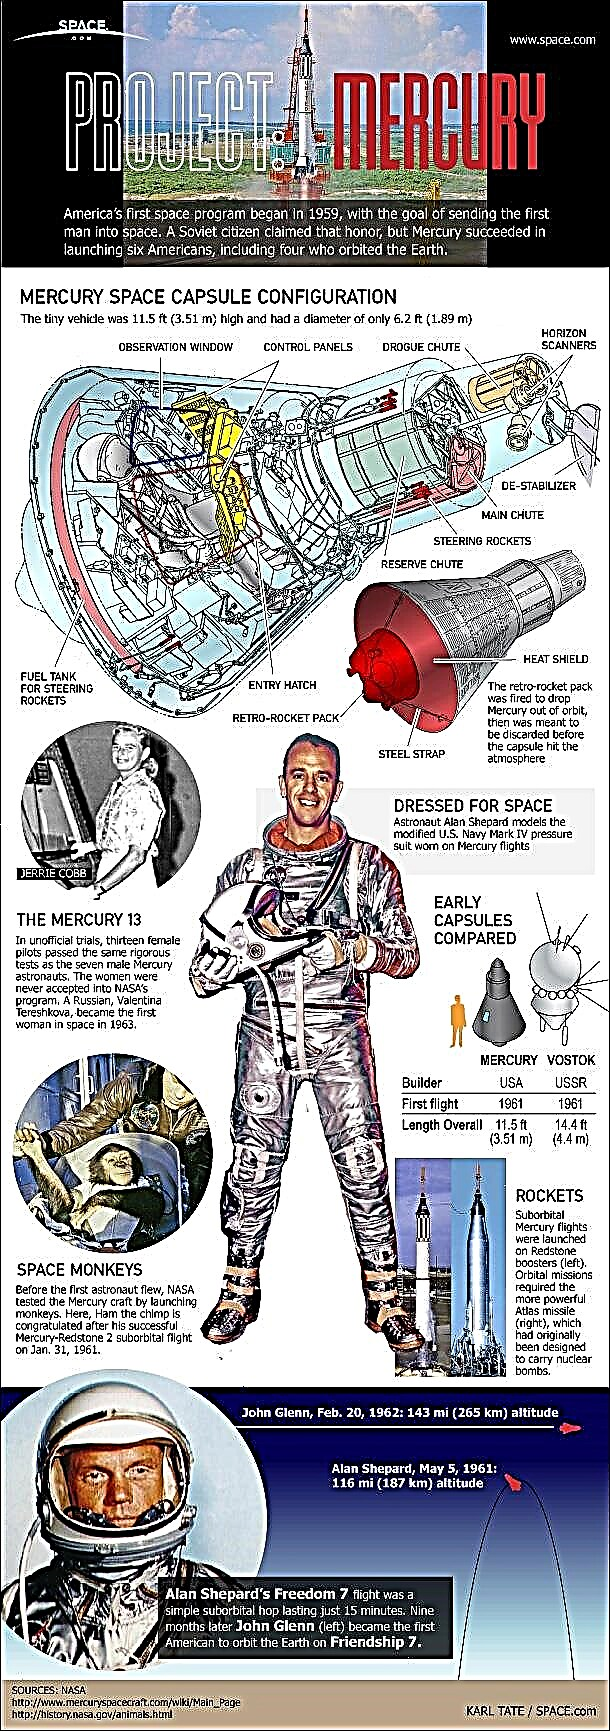 Project Mercury: برنامج الفضاء المأهول الأول في أمريكا